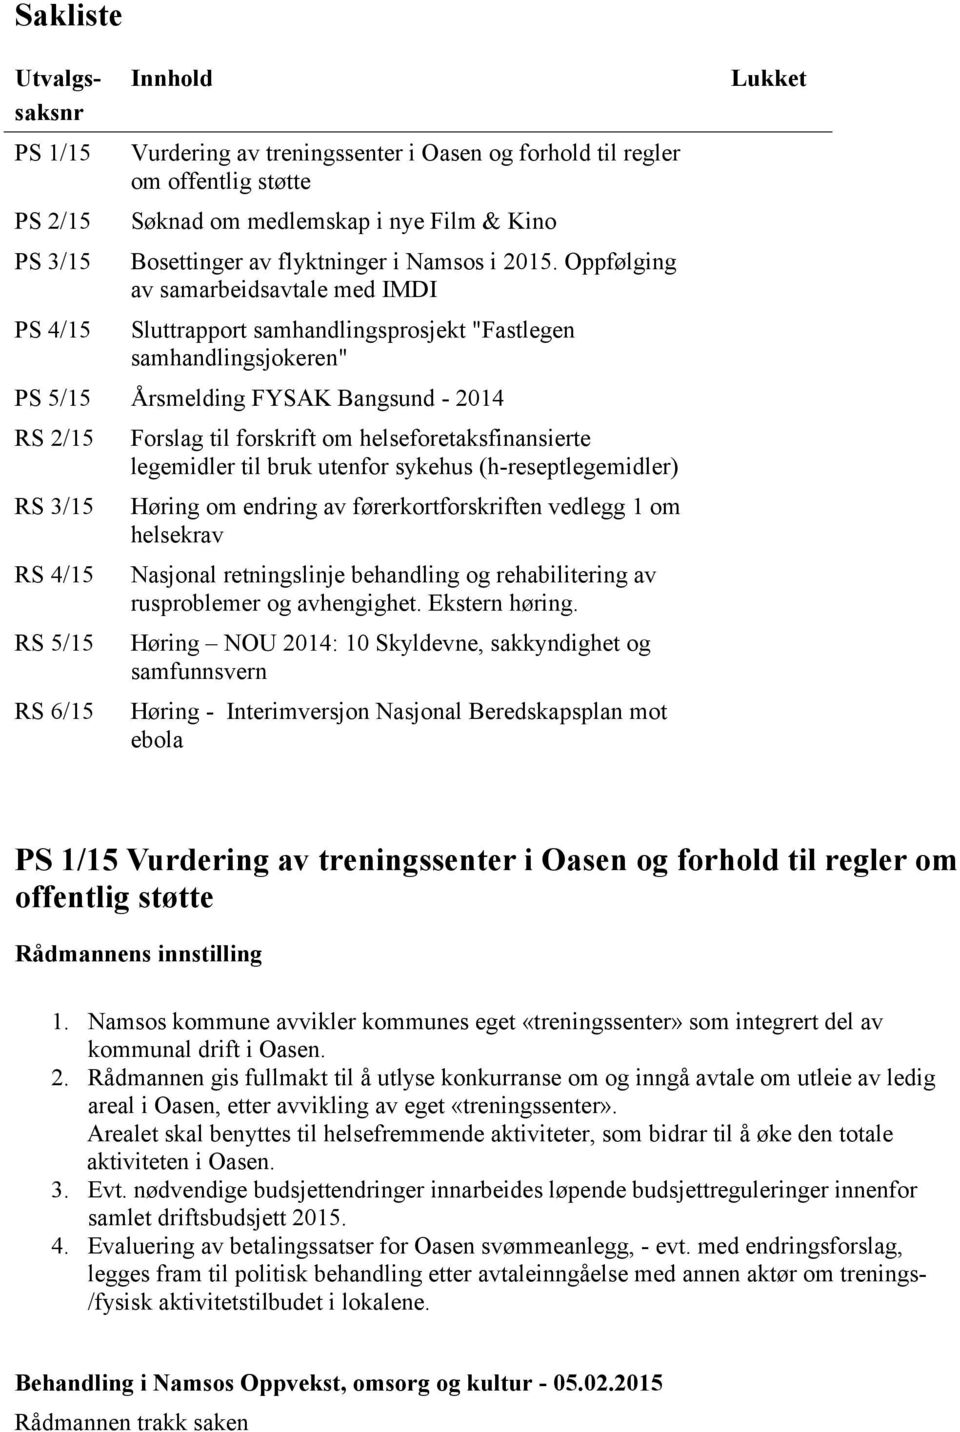 Oppfølging av samarbeidsavtale med IMDI Sluttrapport samhandlingsprosjekt "Fastlegen samhandlingsjokeren" PS 5/15 Årsmelding FYSAK Bangsund - 2014 RS 2/15 RS 3/15 RS 4/15 RS 5/15 RS 6/15 Forslag til